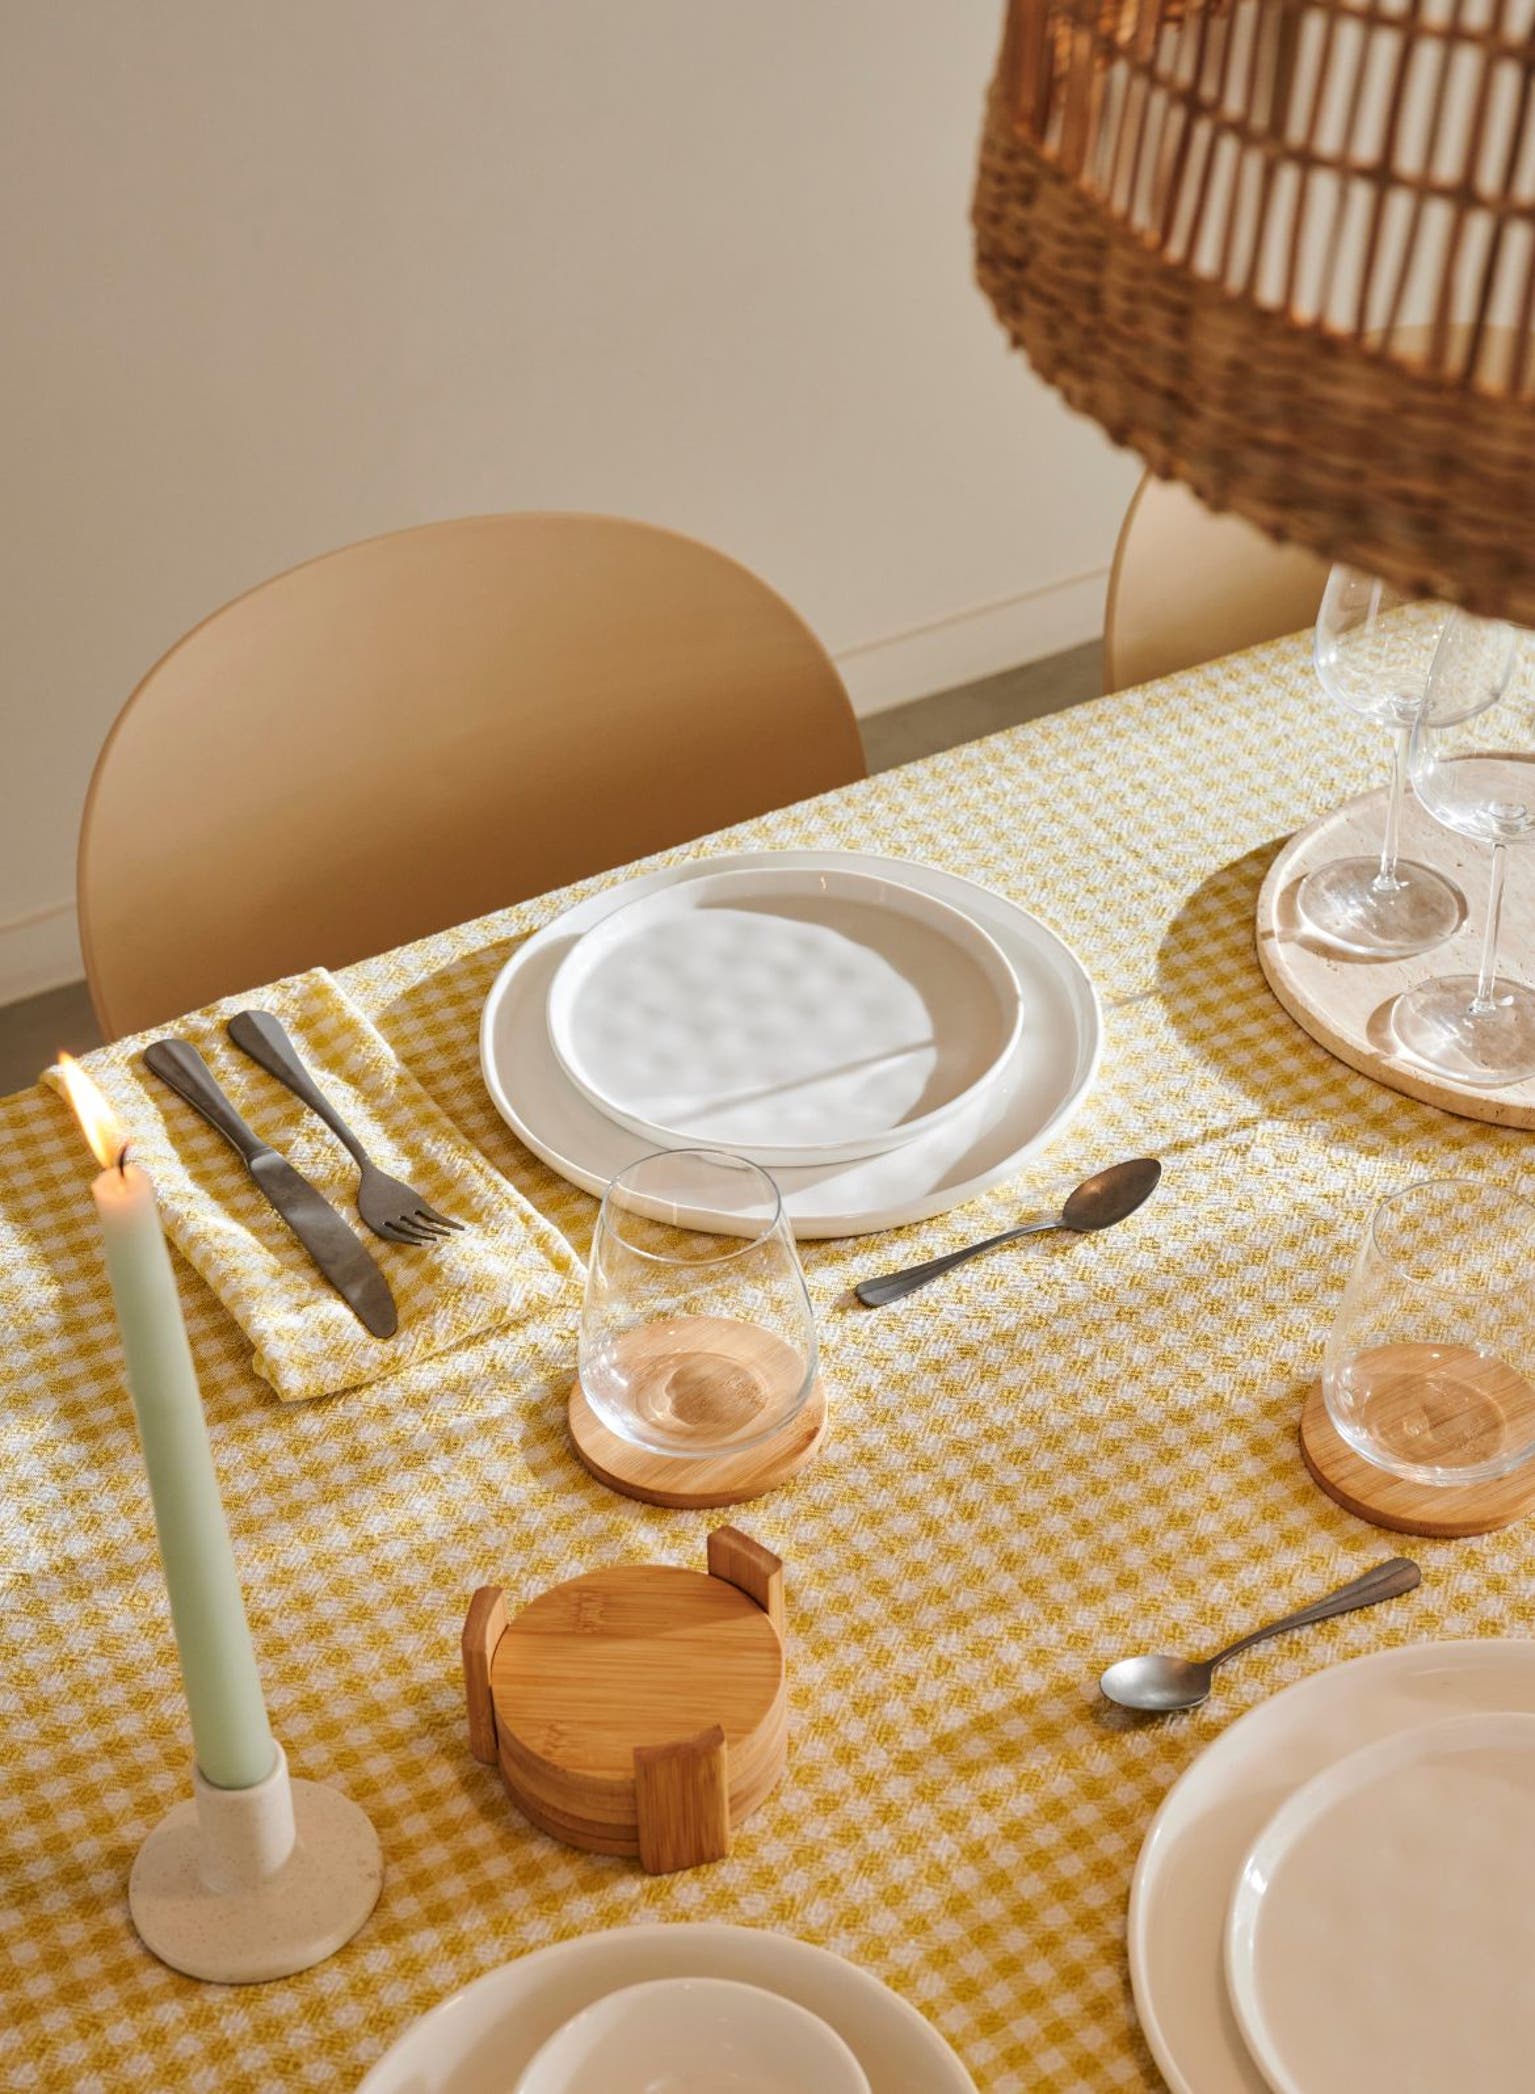 Dessous de plats, Achetez des accessoires de table, Kitchen Living Dining